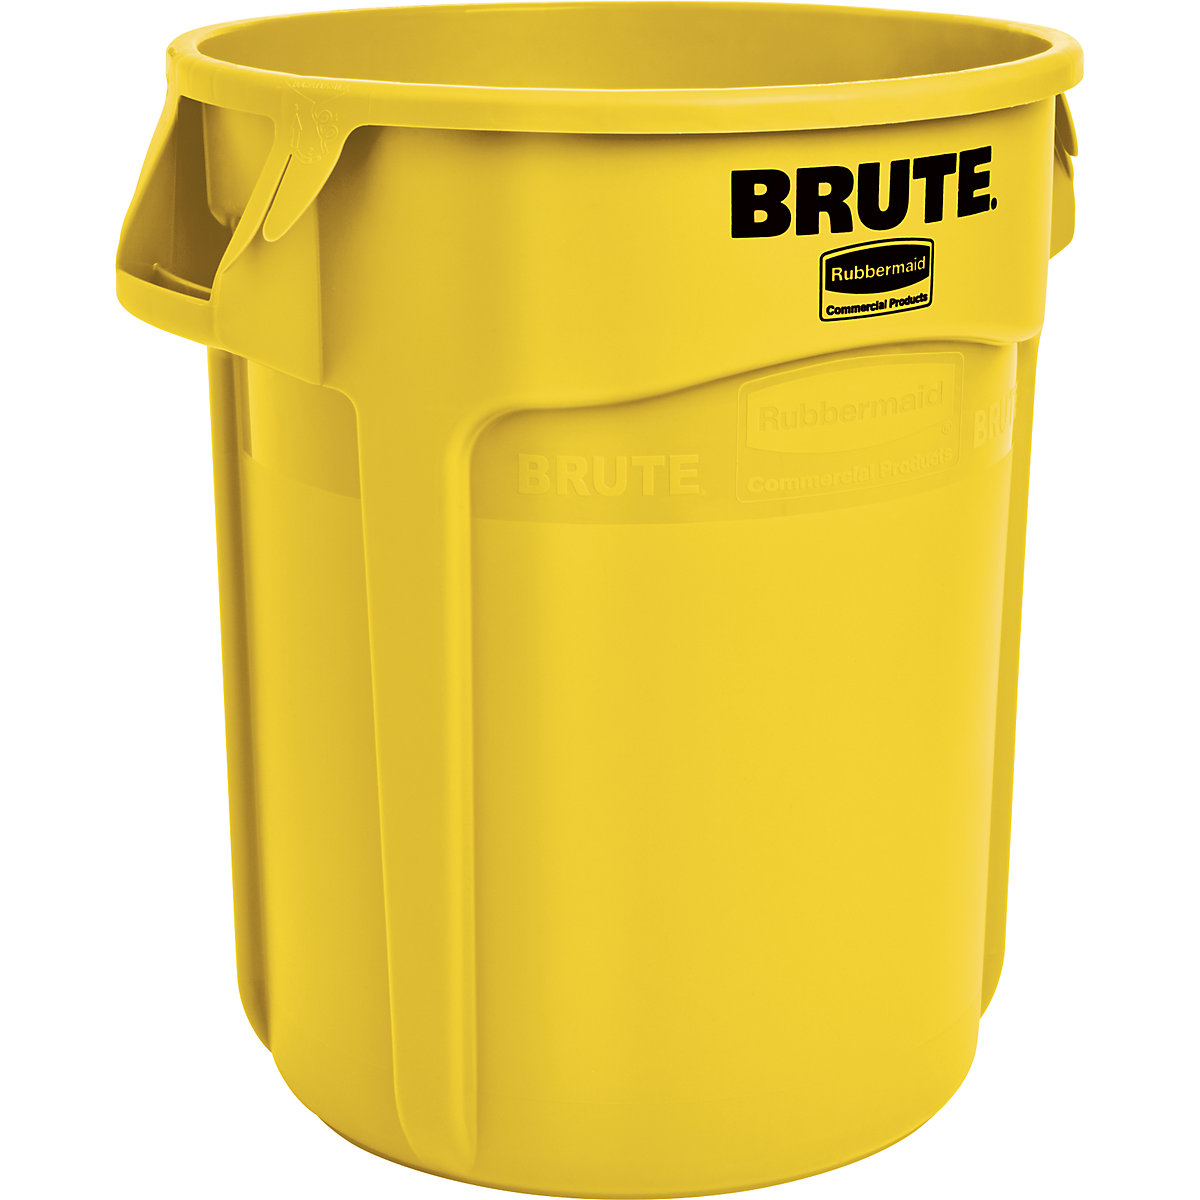 Univerzálny kontajner BRUTE®, okrúhly – Rubbermaid, objem 75 l, žltá-7